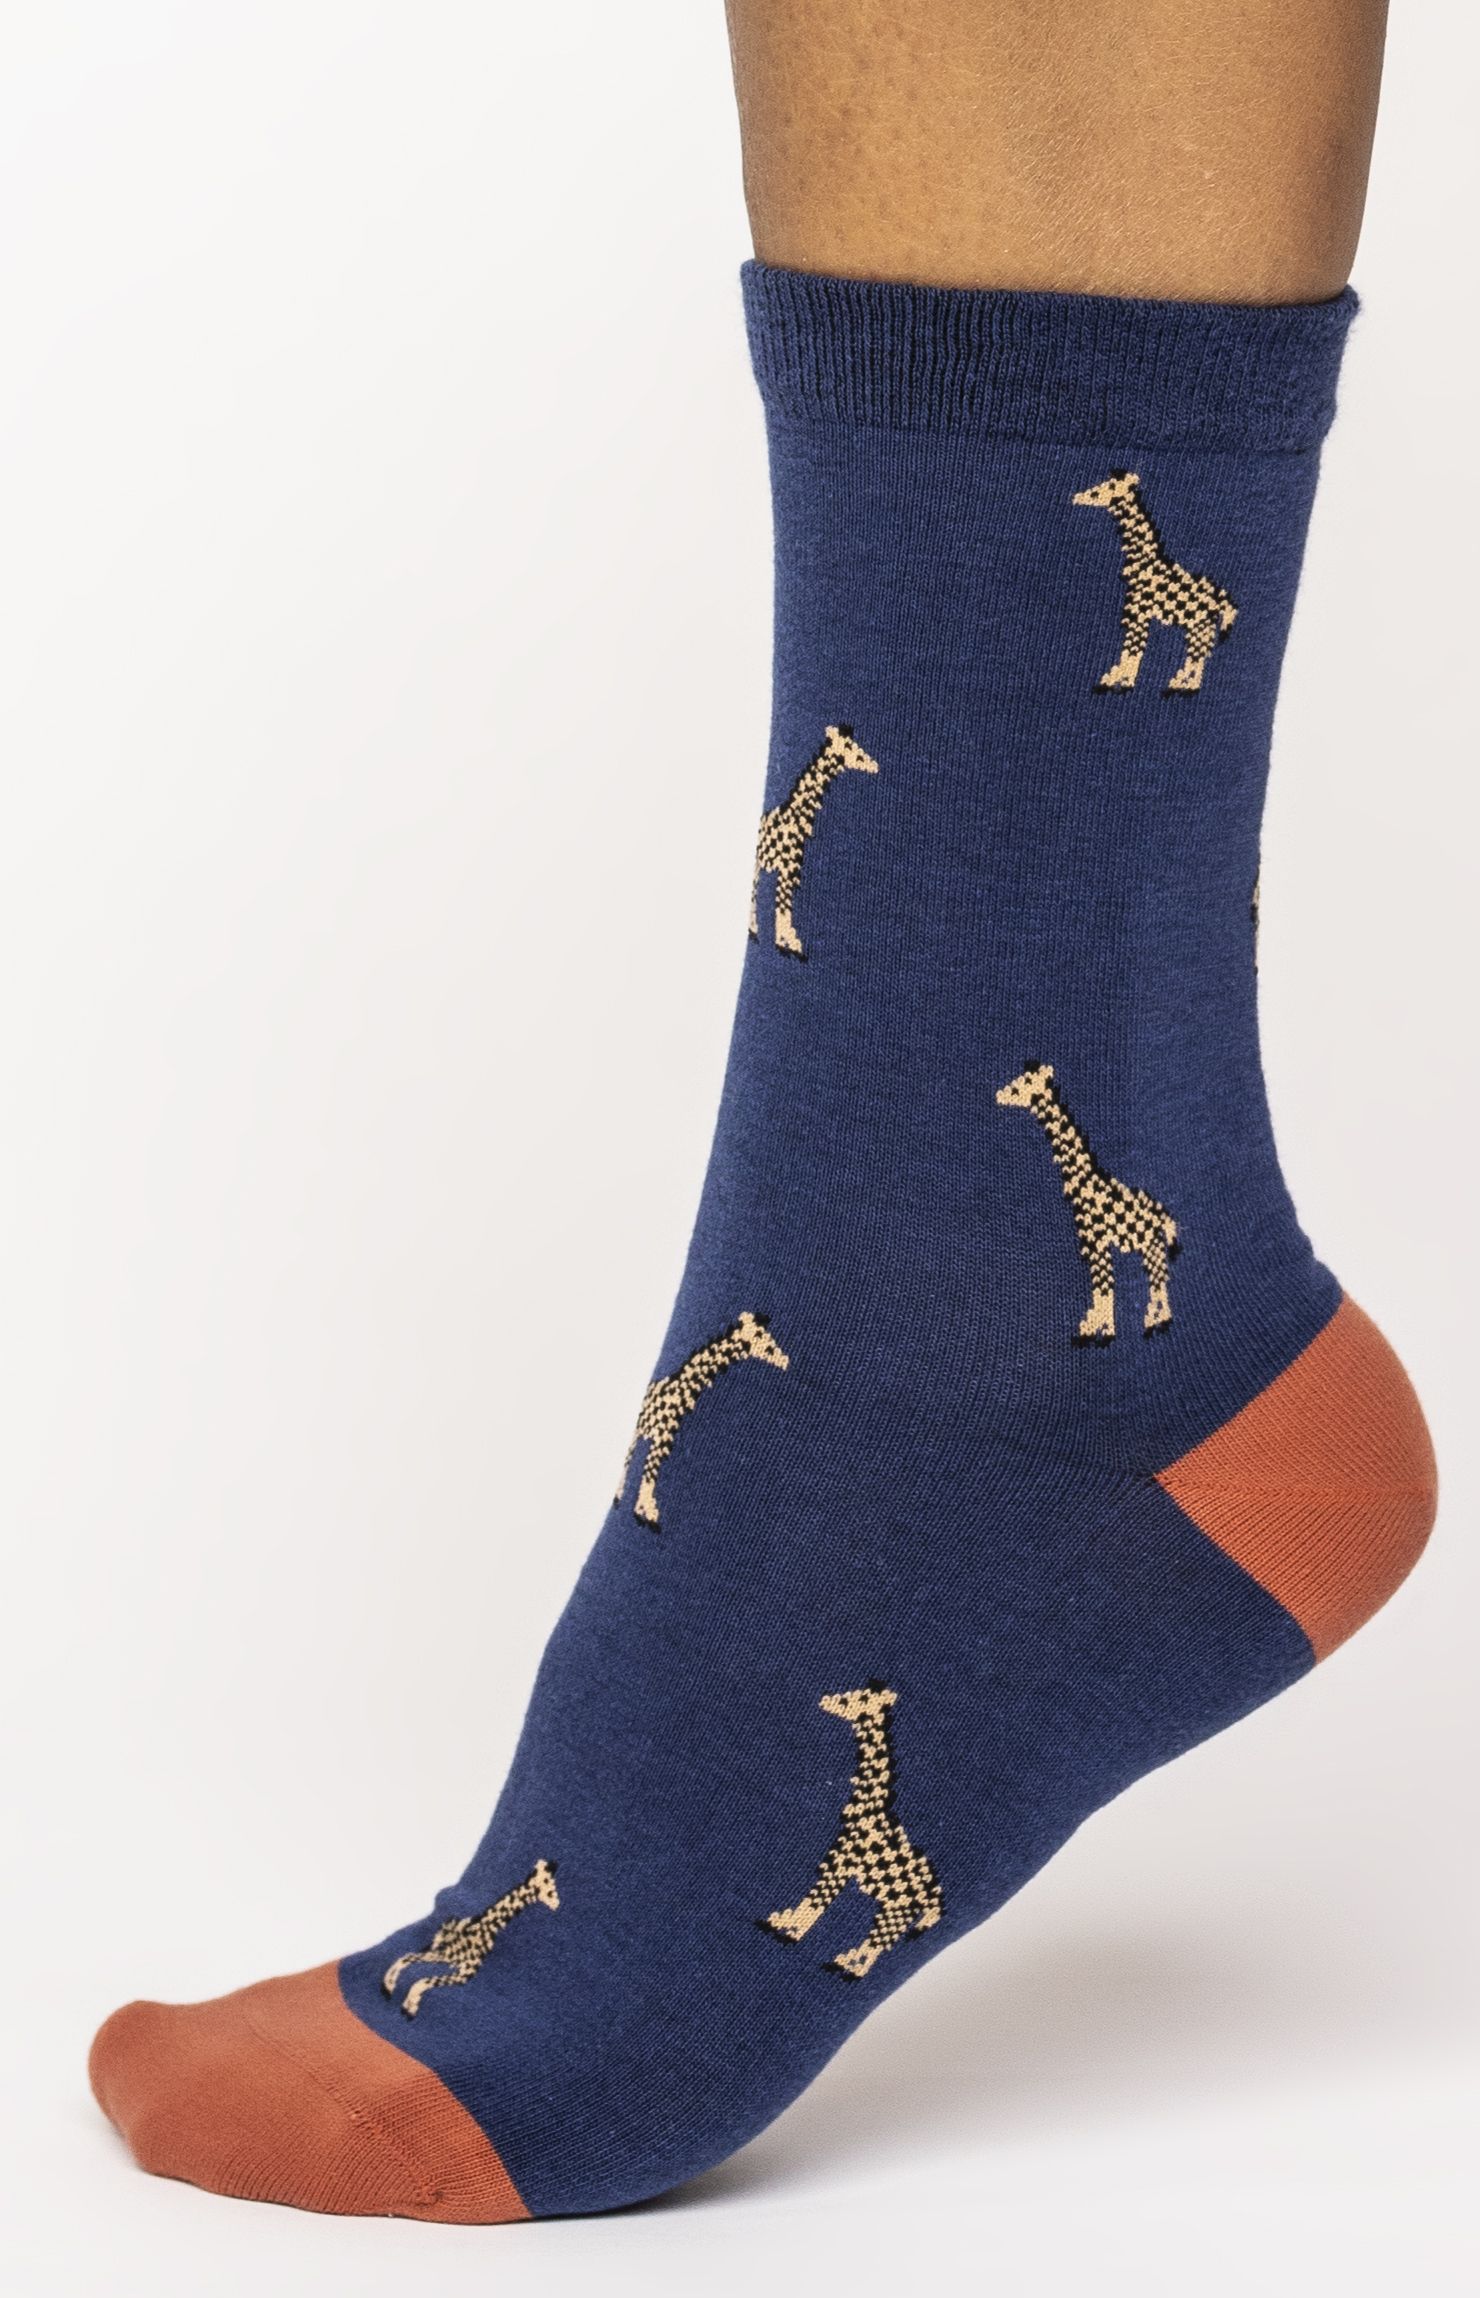 Damen-Socken Wild Animals Twilight Blue